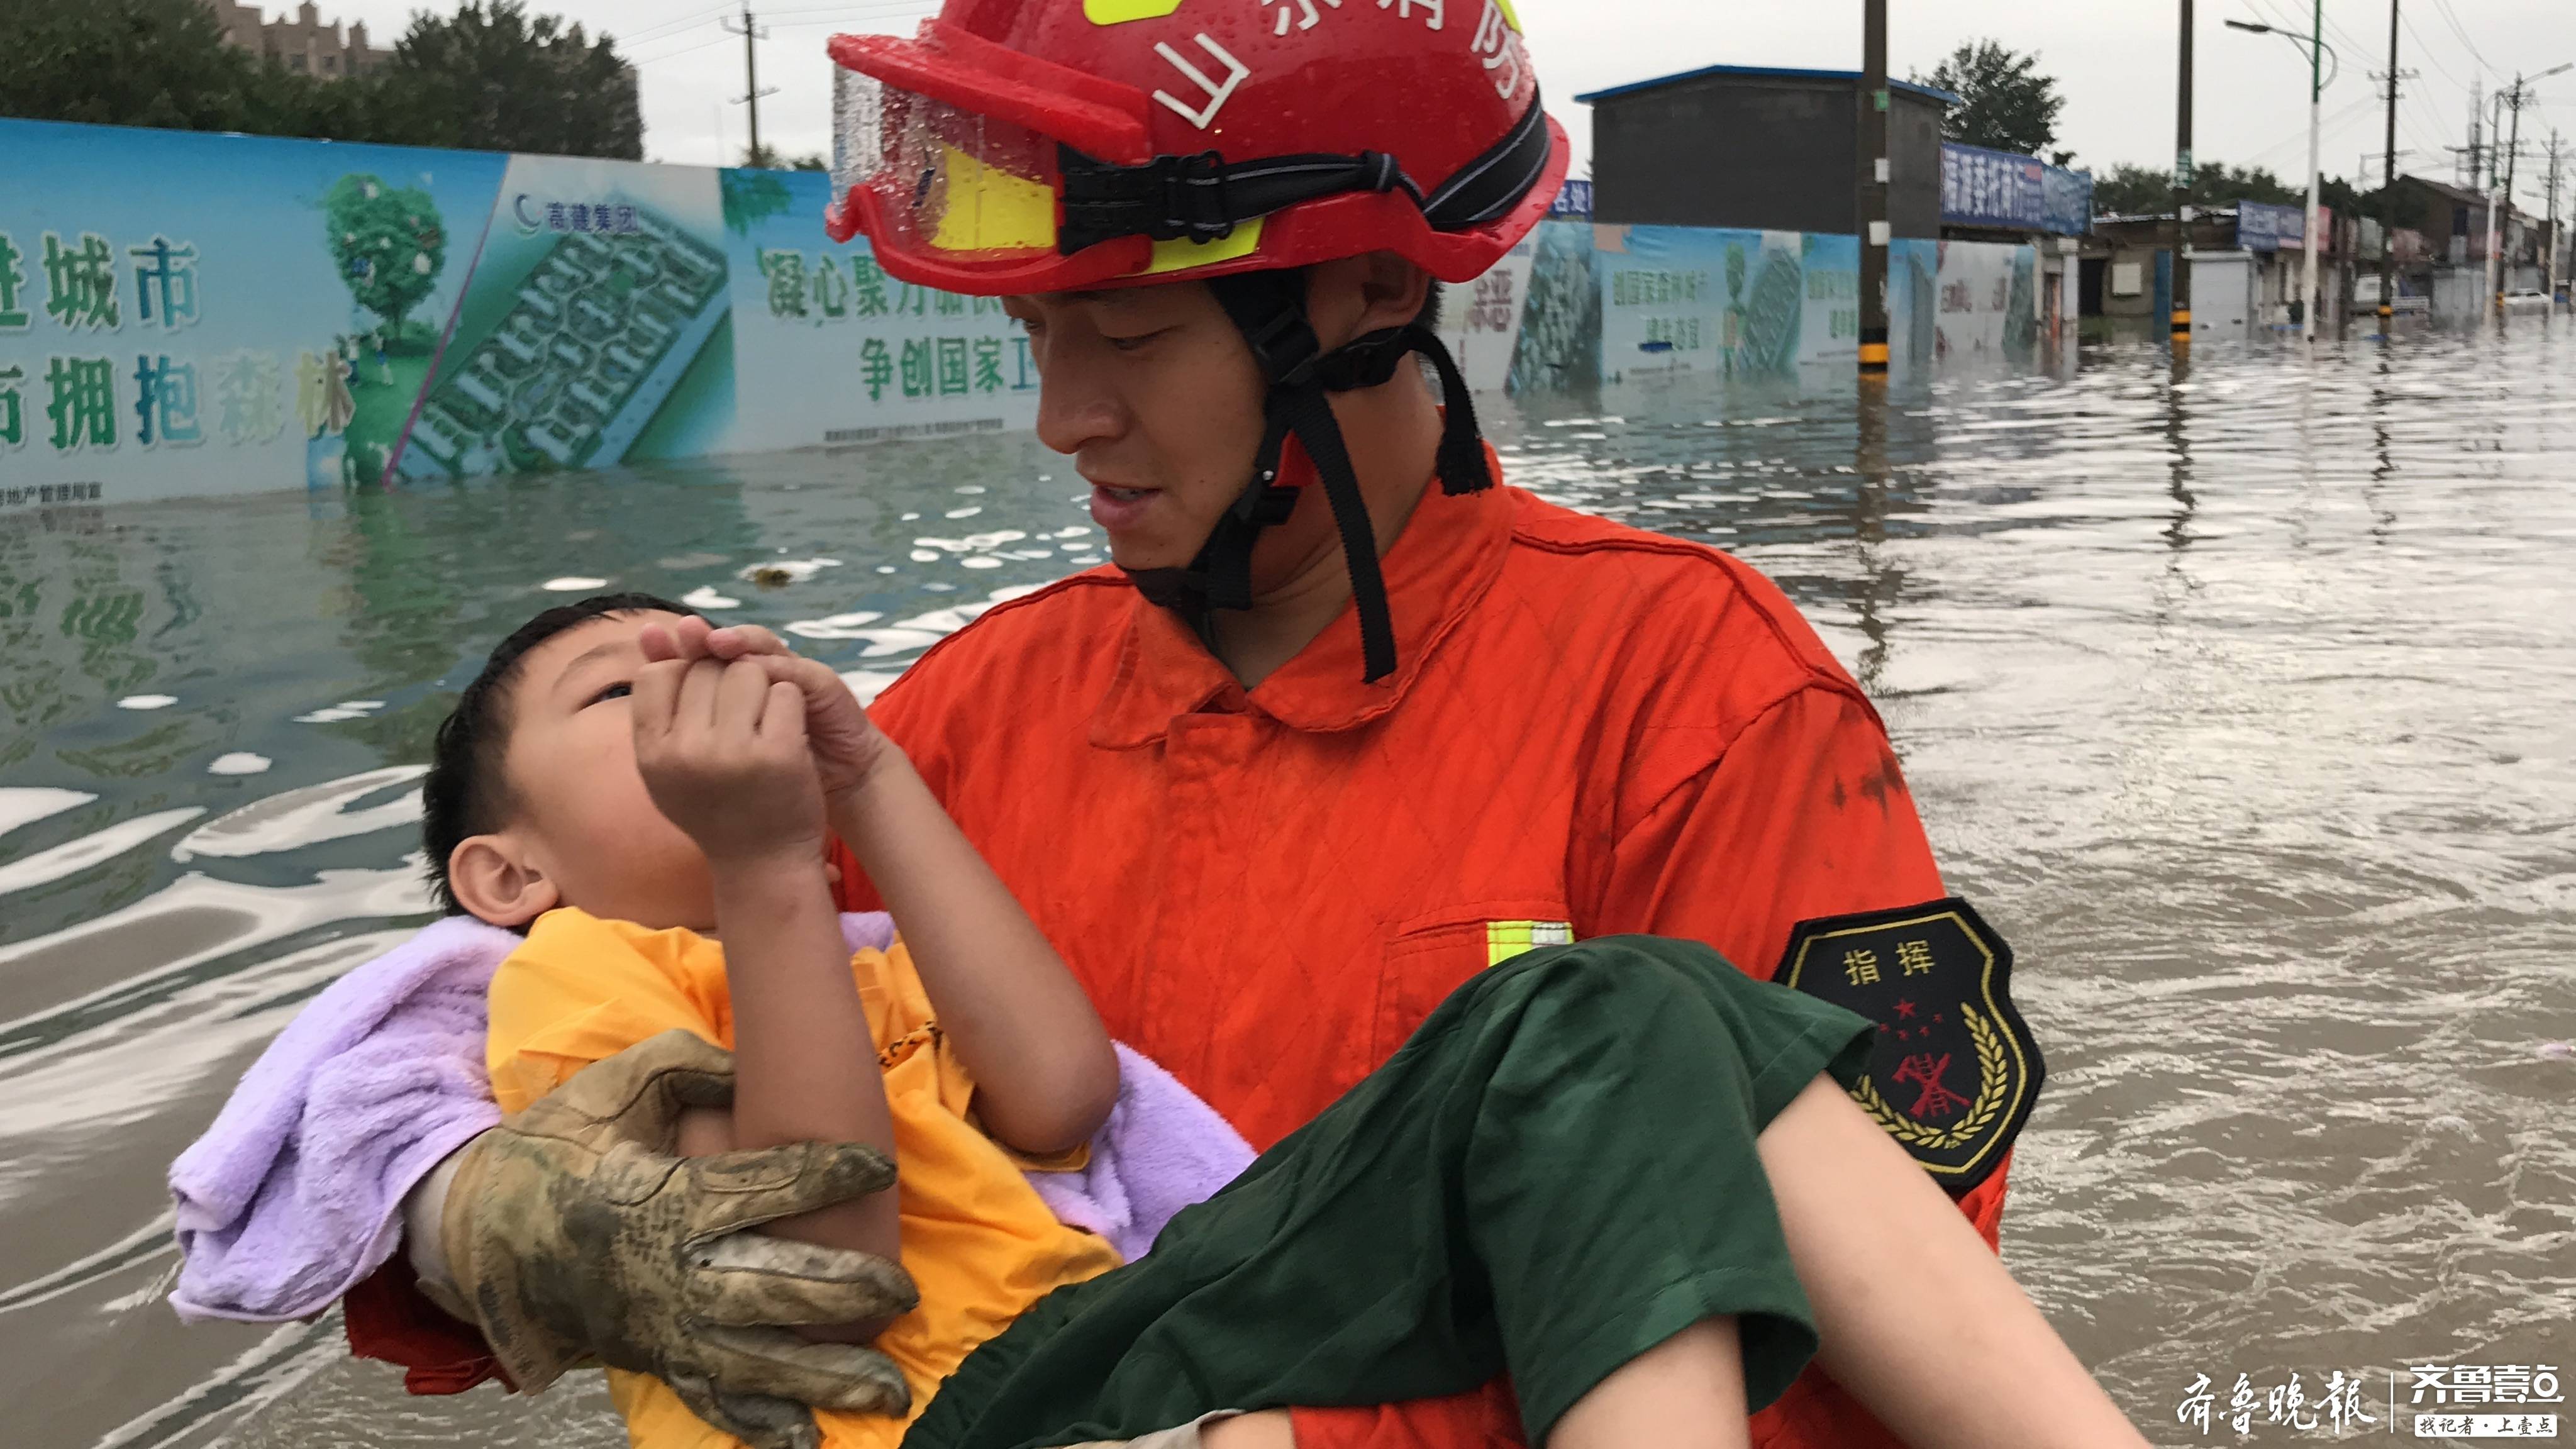 5小时救援60人!聊城大暴雨中消防员涉水救人